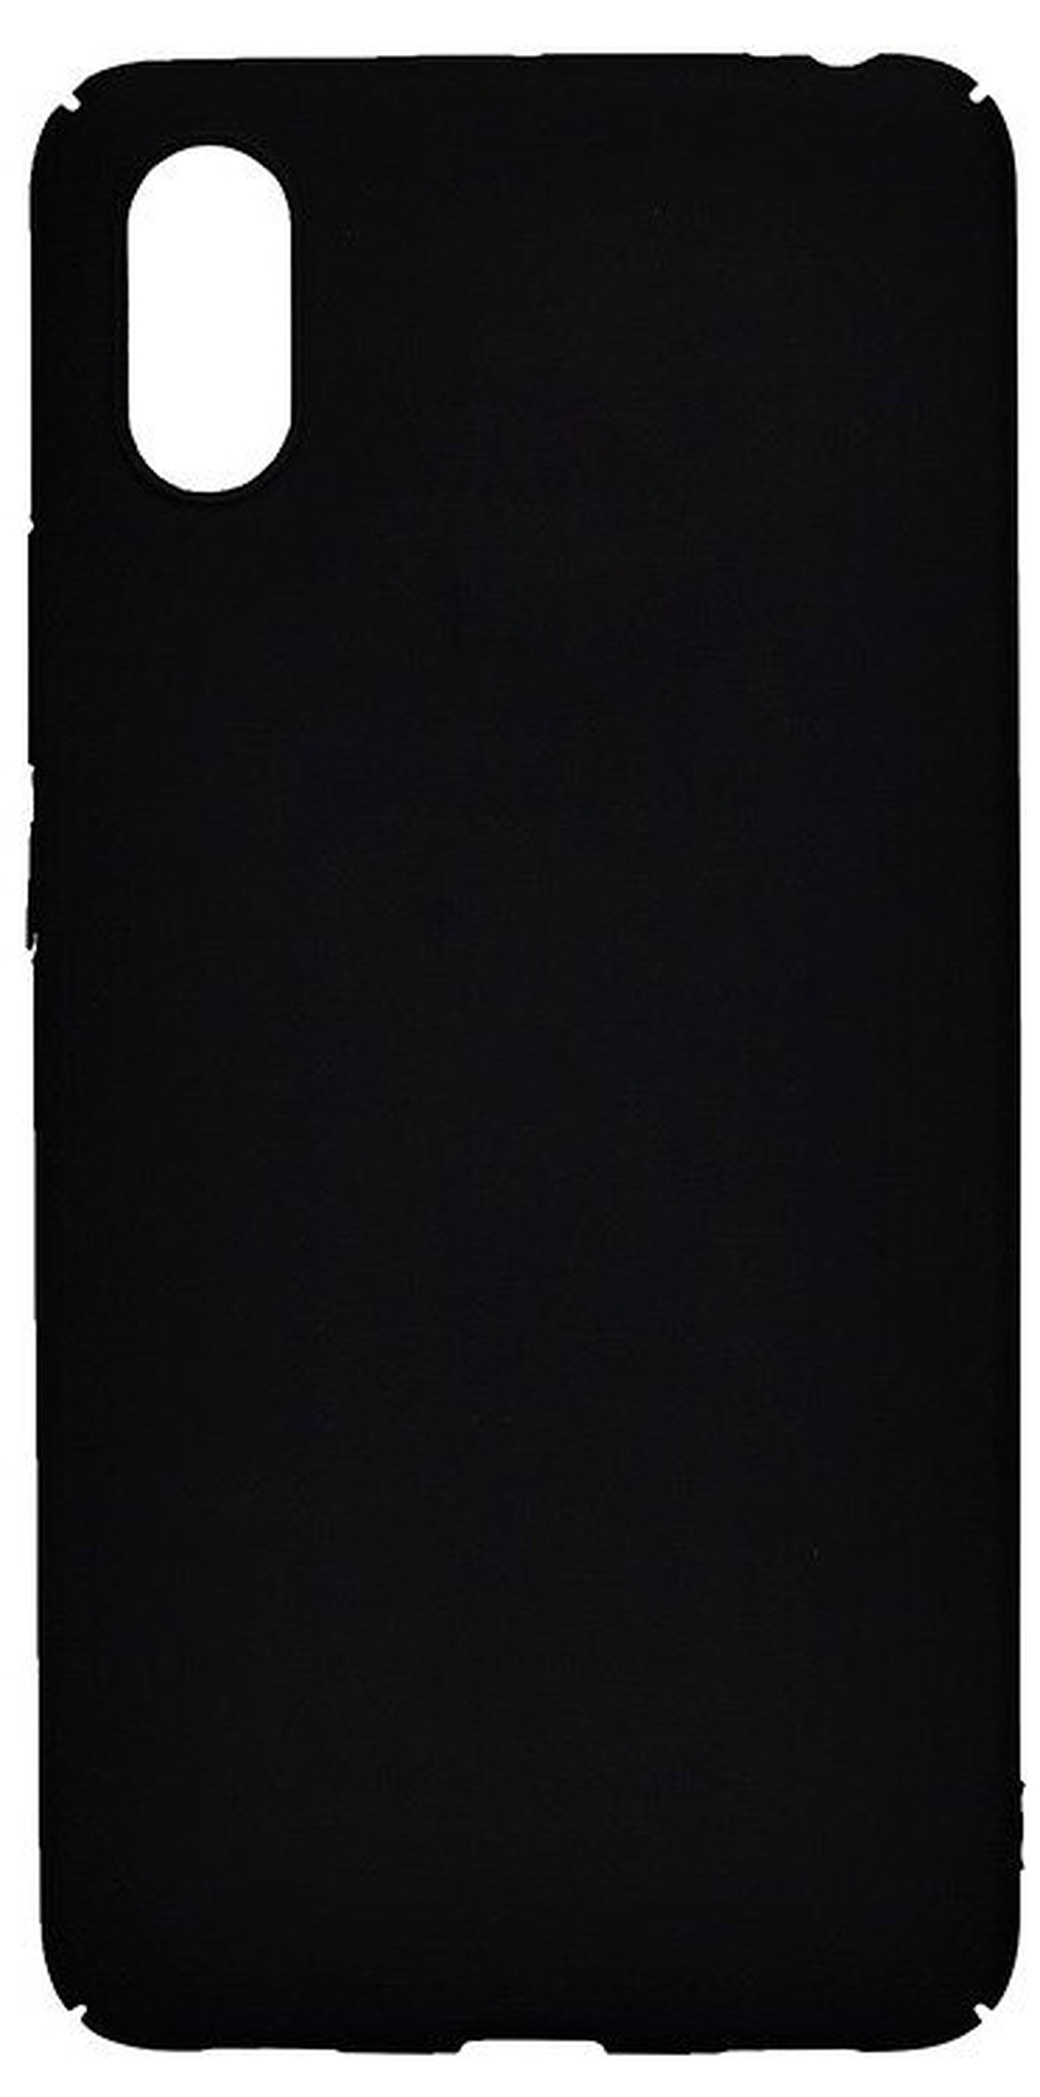 Чехол для смартфона Xiaomi Mi 8 Pro силиконовый (матовый черный), BoraSCO фото